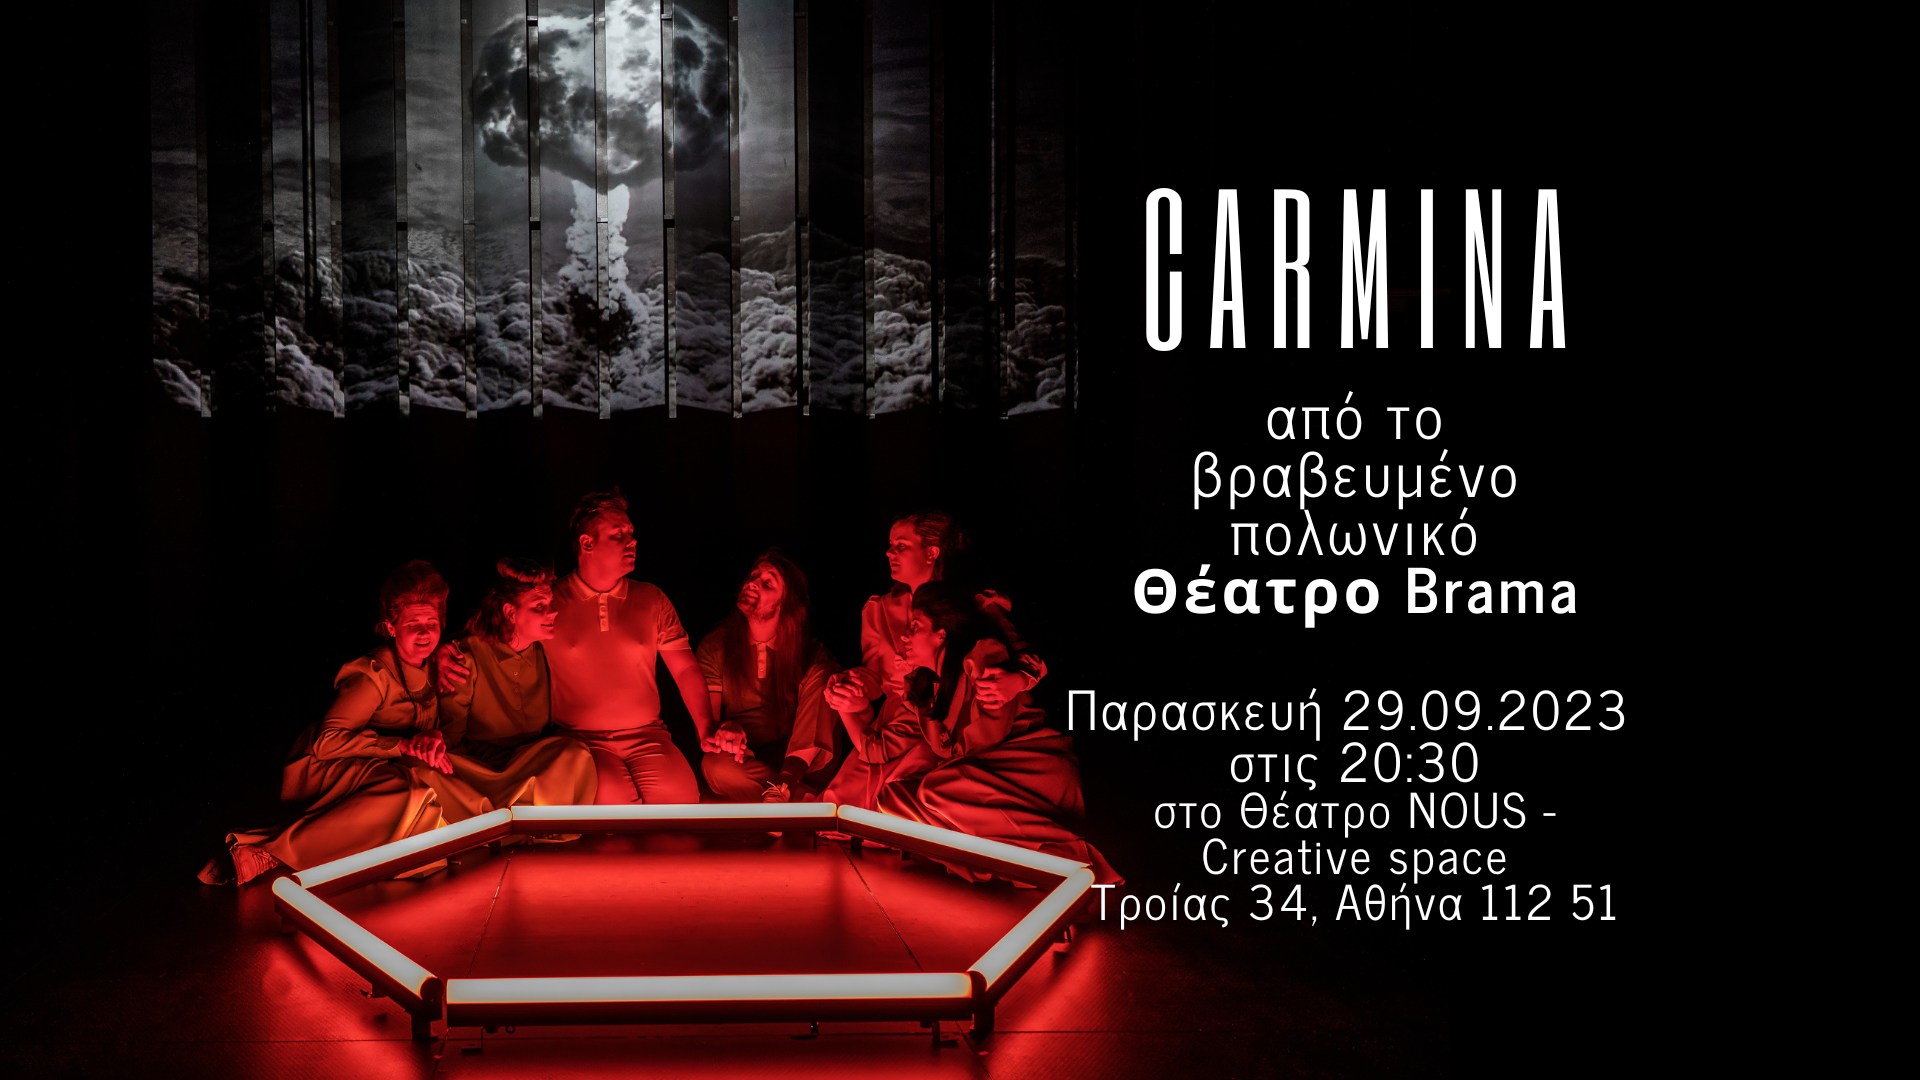 Παράσταση &quot;Carmina&quot; - Το πολωνικό θέατρο Brama έρχεται στην Αθήνα